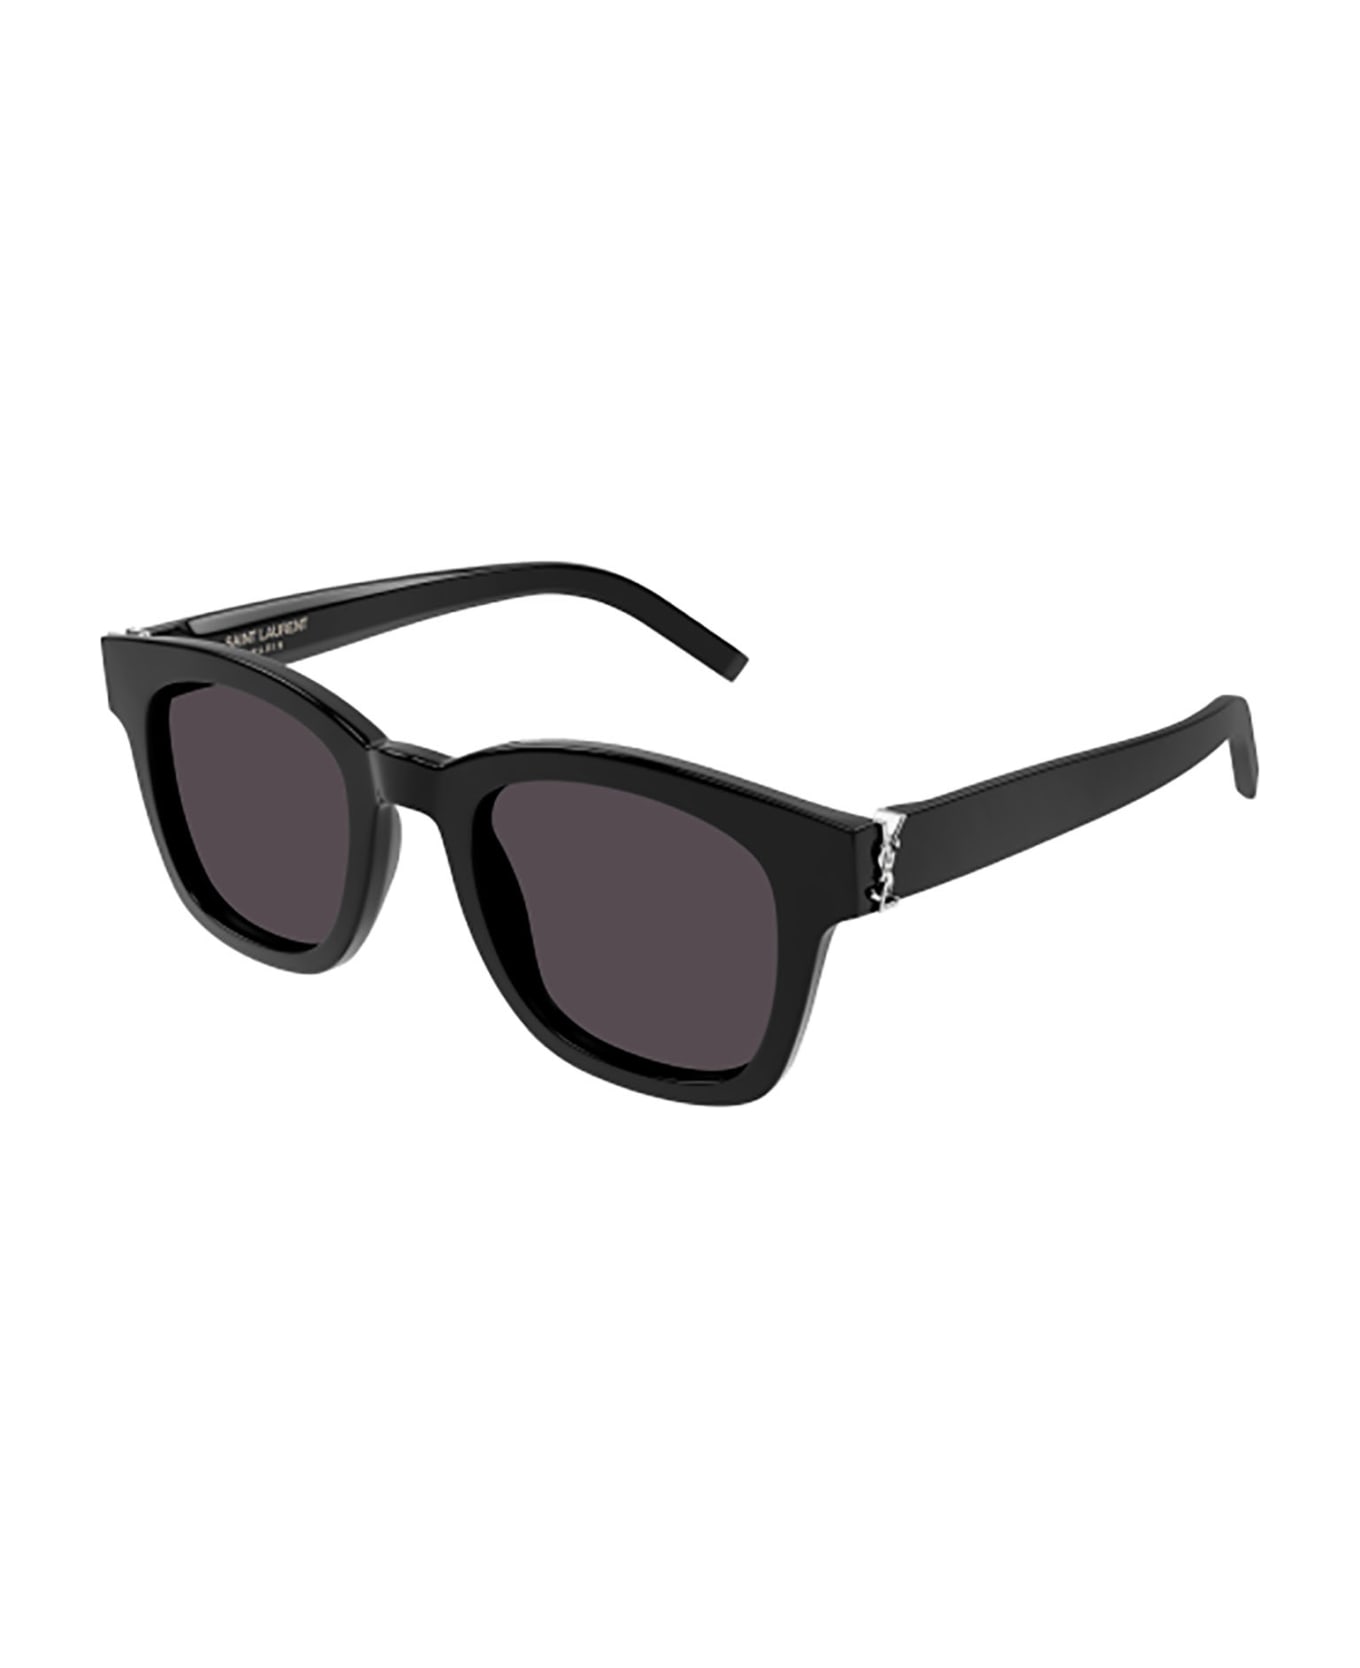 Saint Laurent Eyewear Sl M124 Sunglasses - 001 black black black サングラス